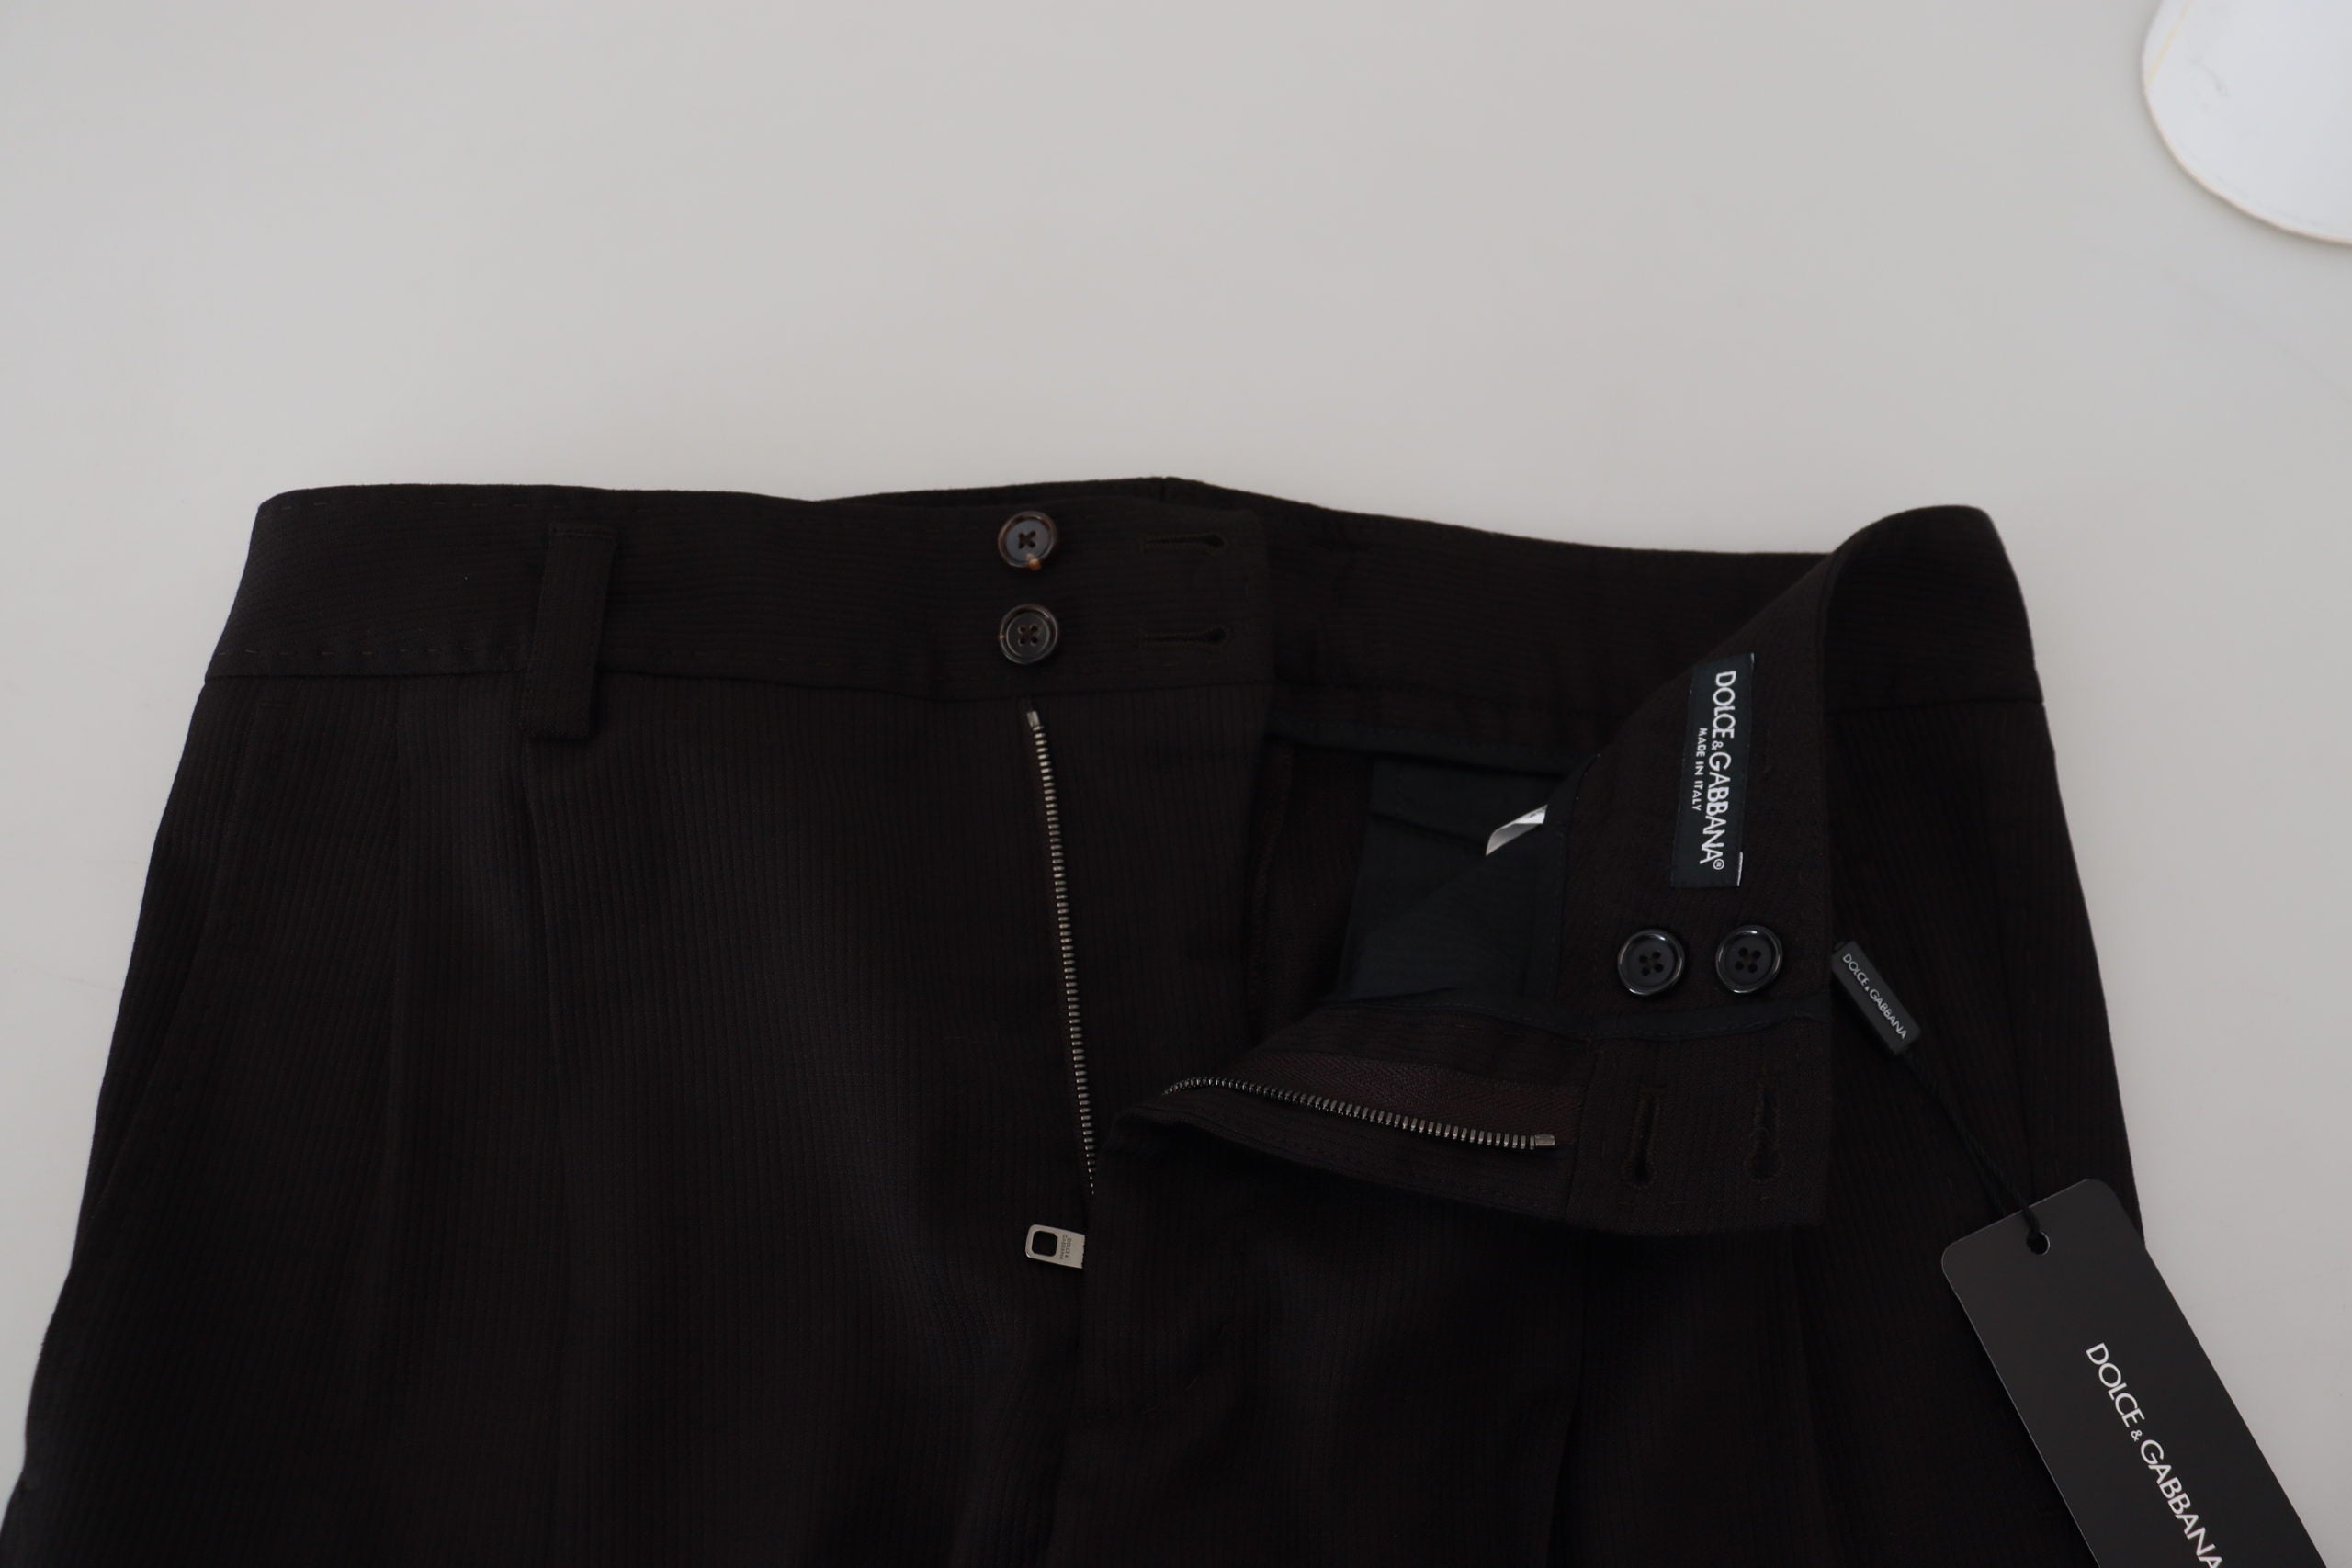 Мъжки официални панталони Dolce &amp; Gabbana, черни вълнени чино